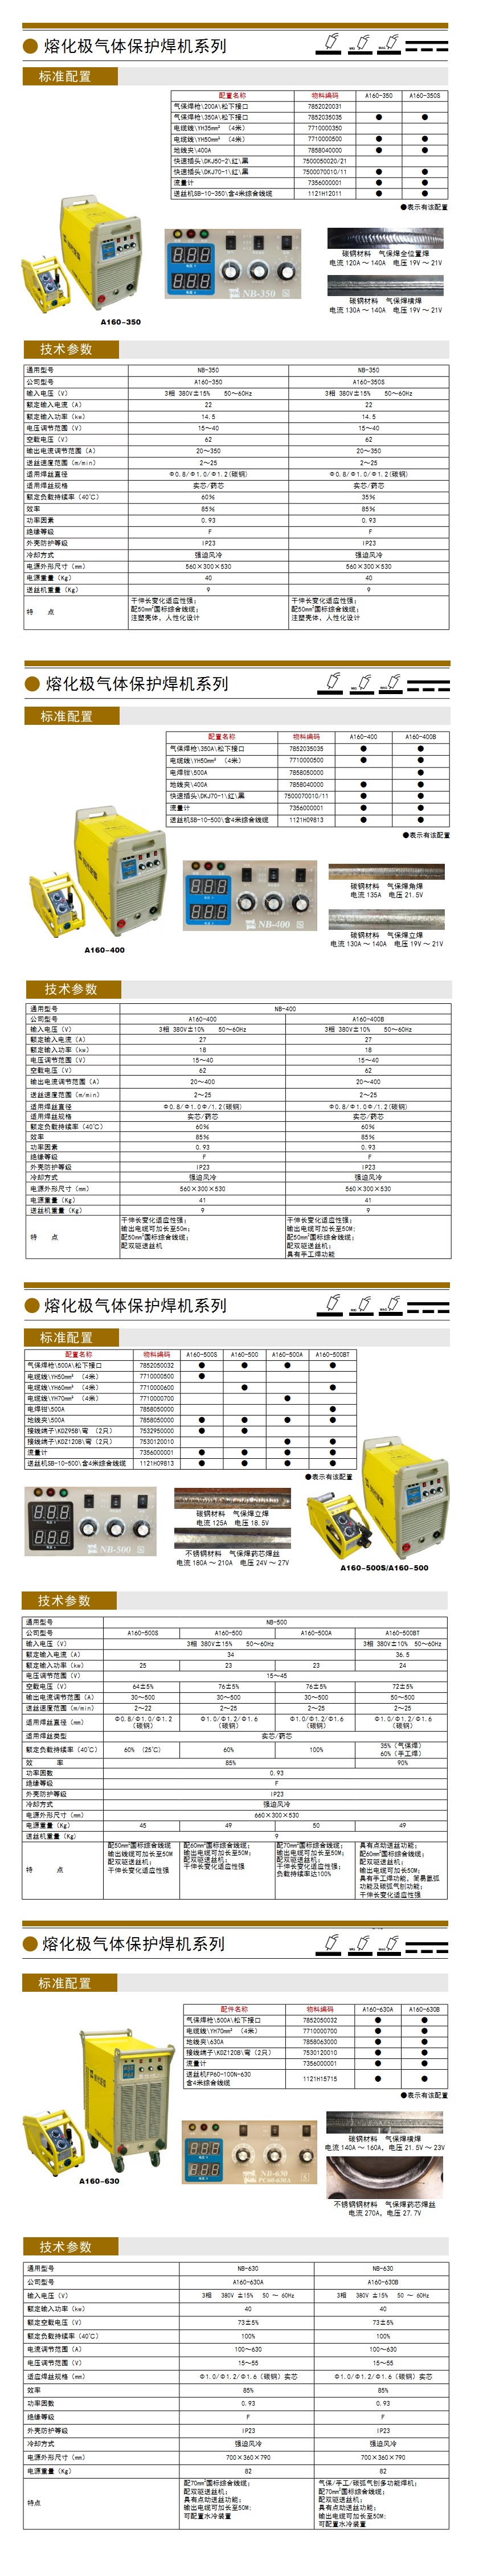 熔化极气体保护焊机系列1.jpg